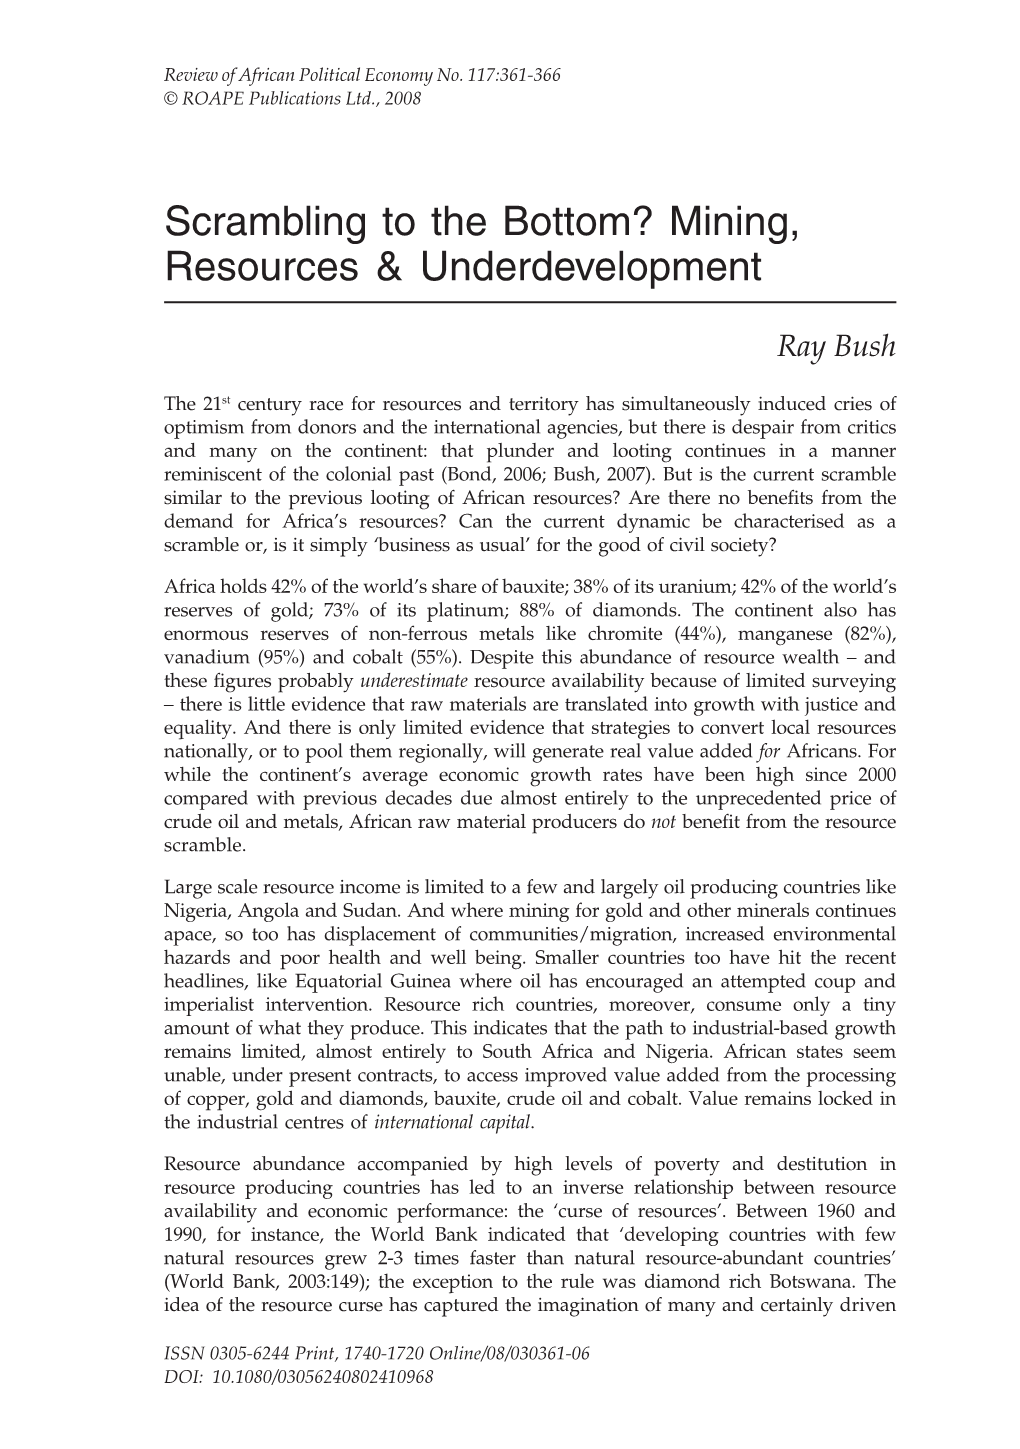 Mining, Resources & Underdevelopment